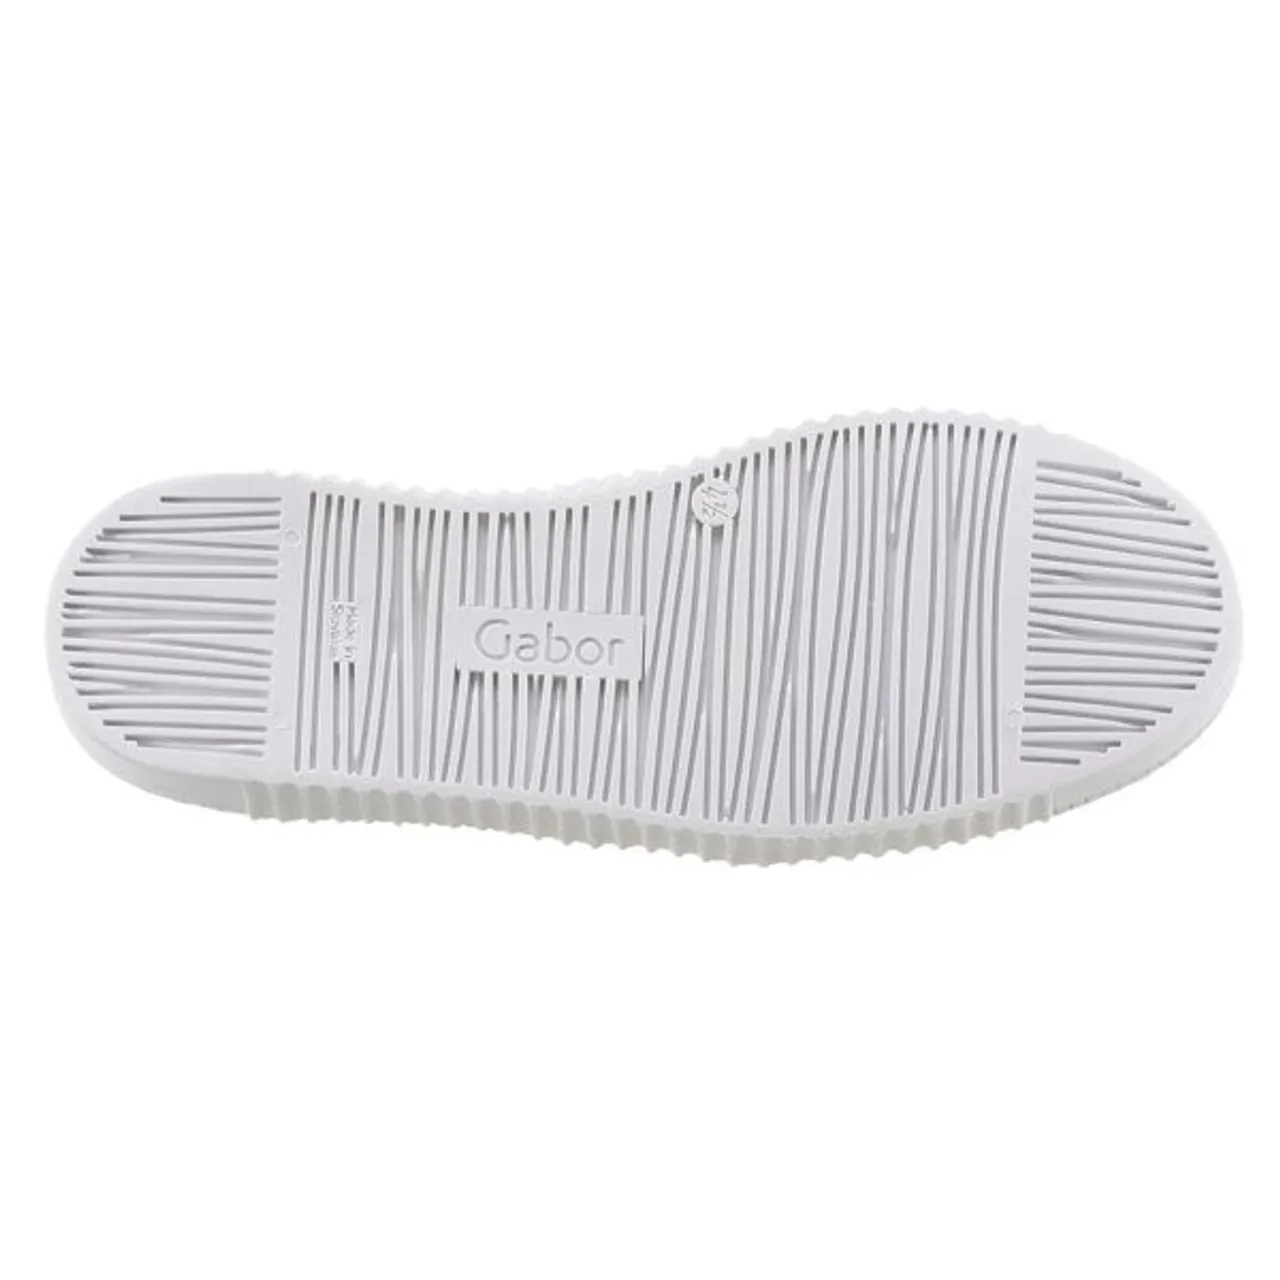 Slip-On Sneaker GABOR Gr. 42, silberfarben (weiß, silberfarben) Damen Schuhe Sneaker Schnürschuh, Halbschuh, Slipper mit aufgesetzter Zierschnürung